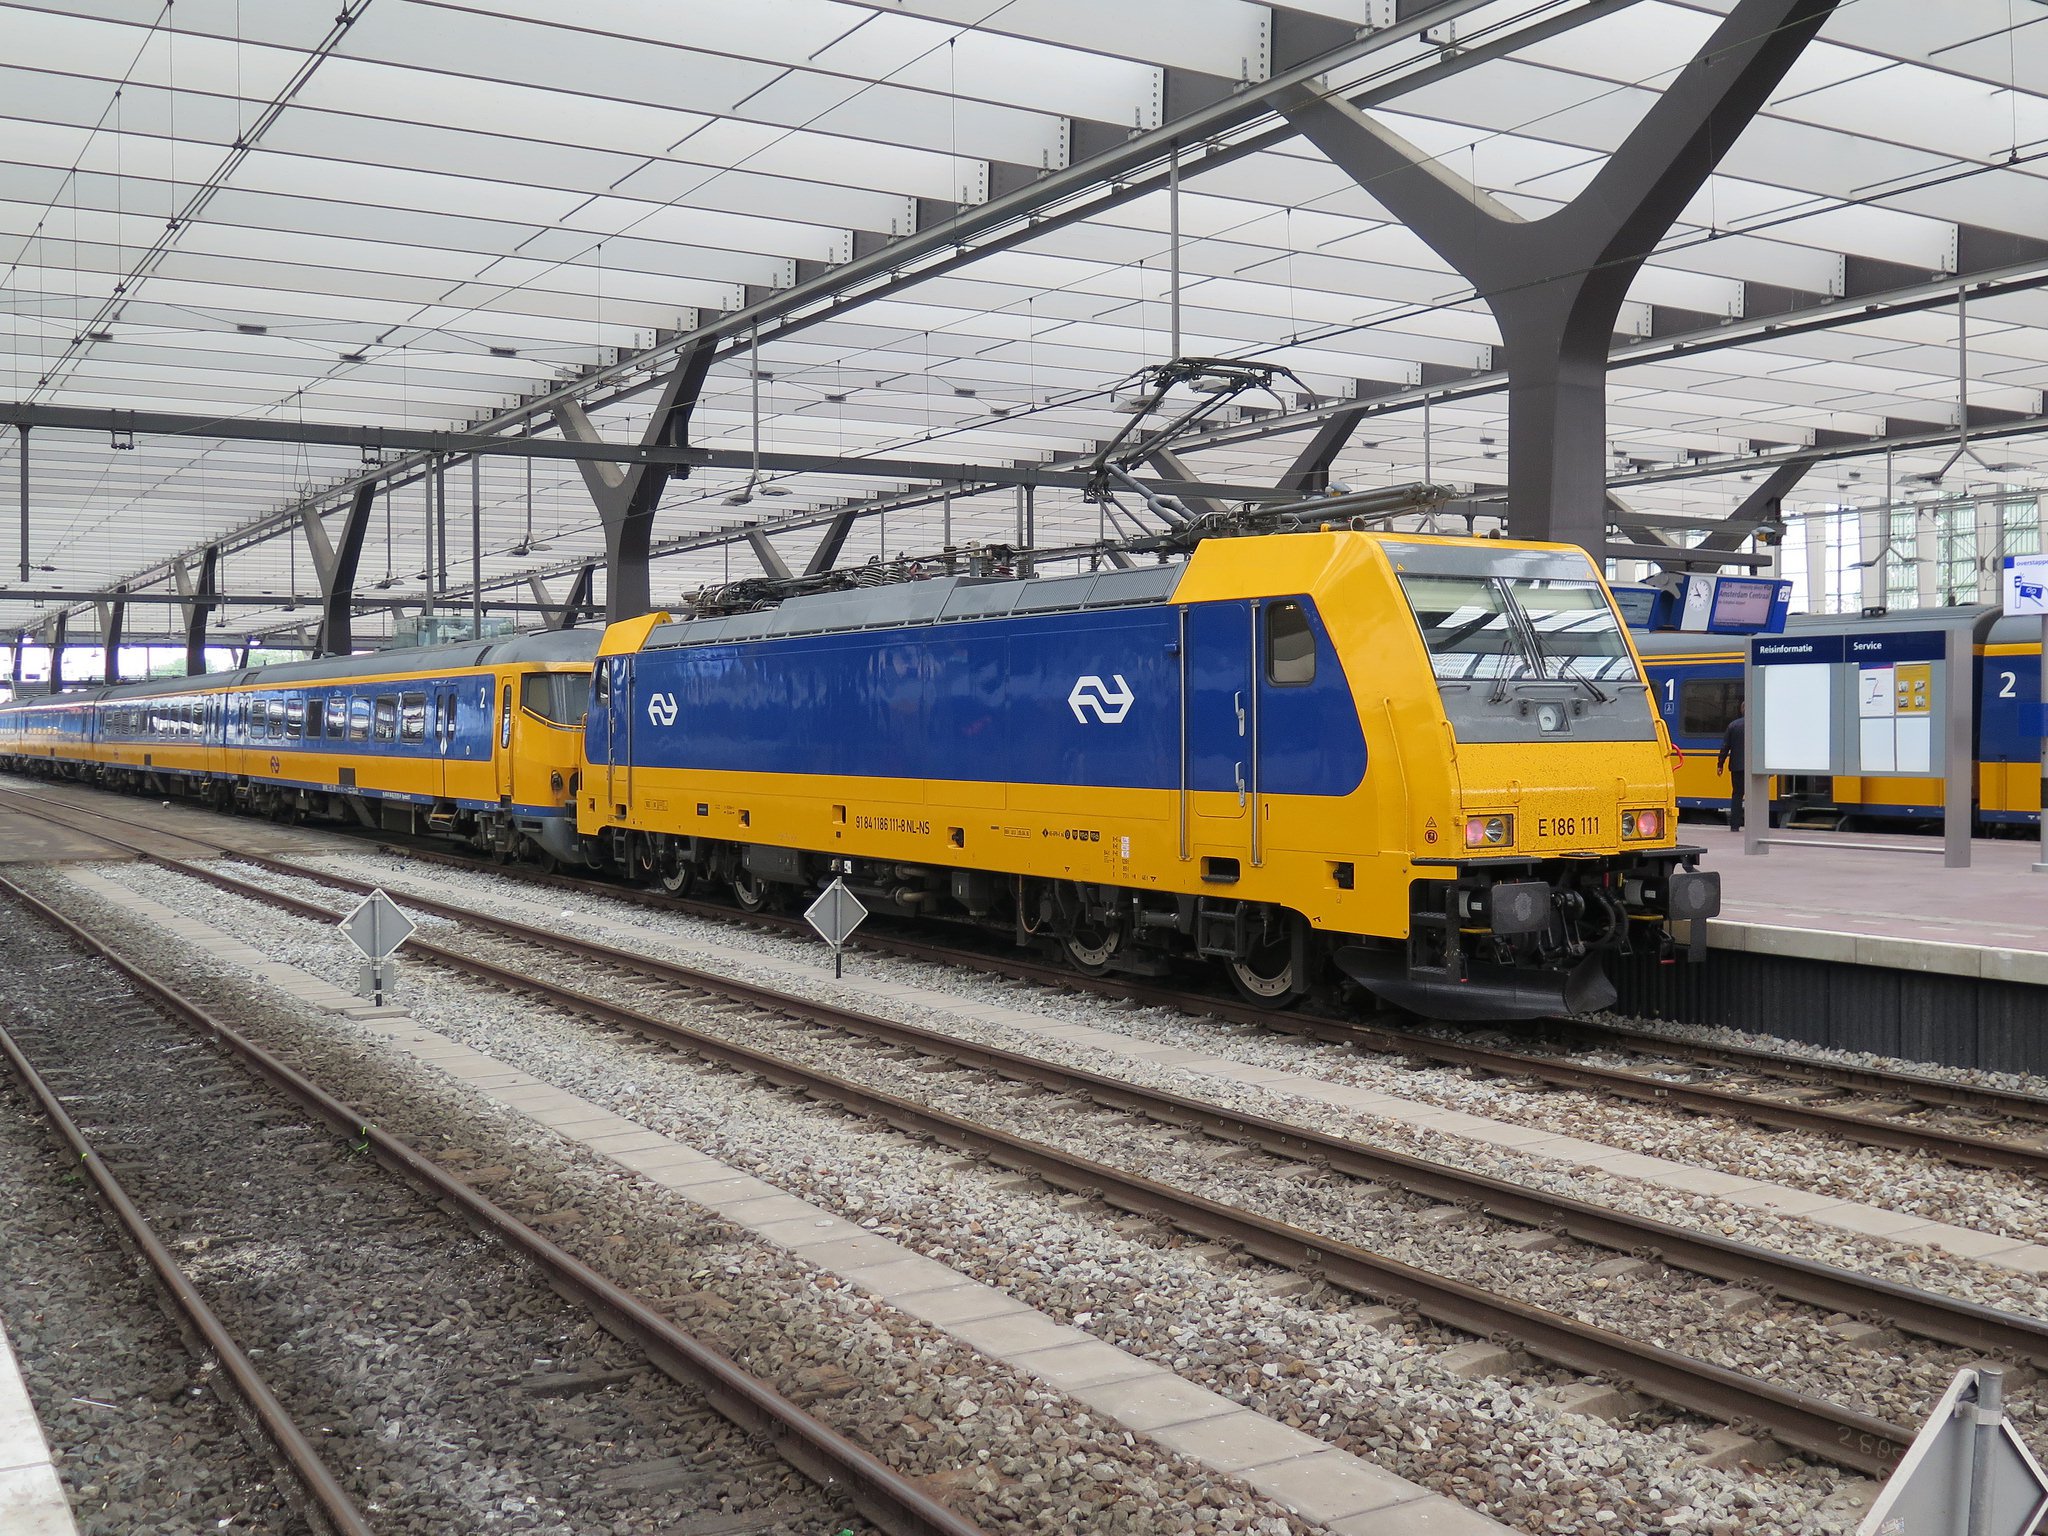 amsterdam airport to city center train fare